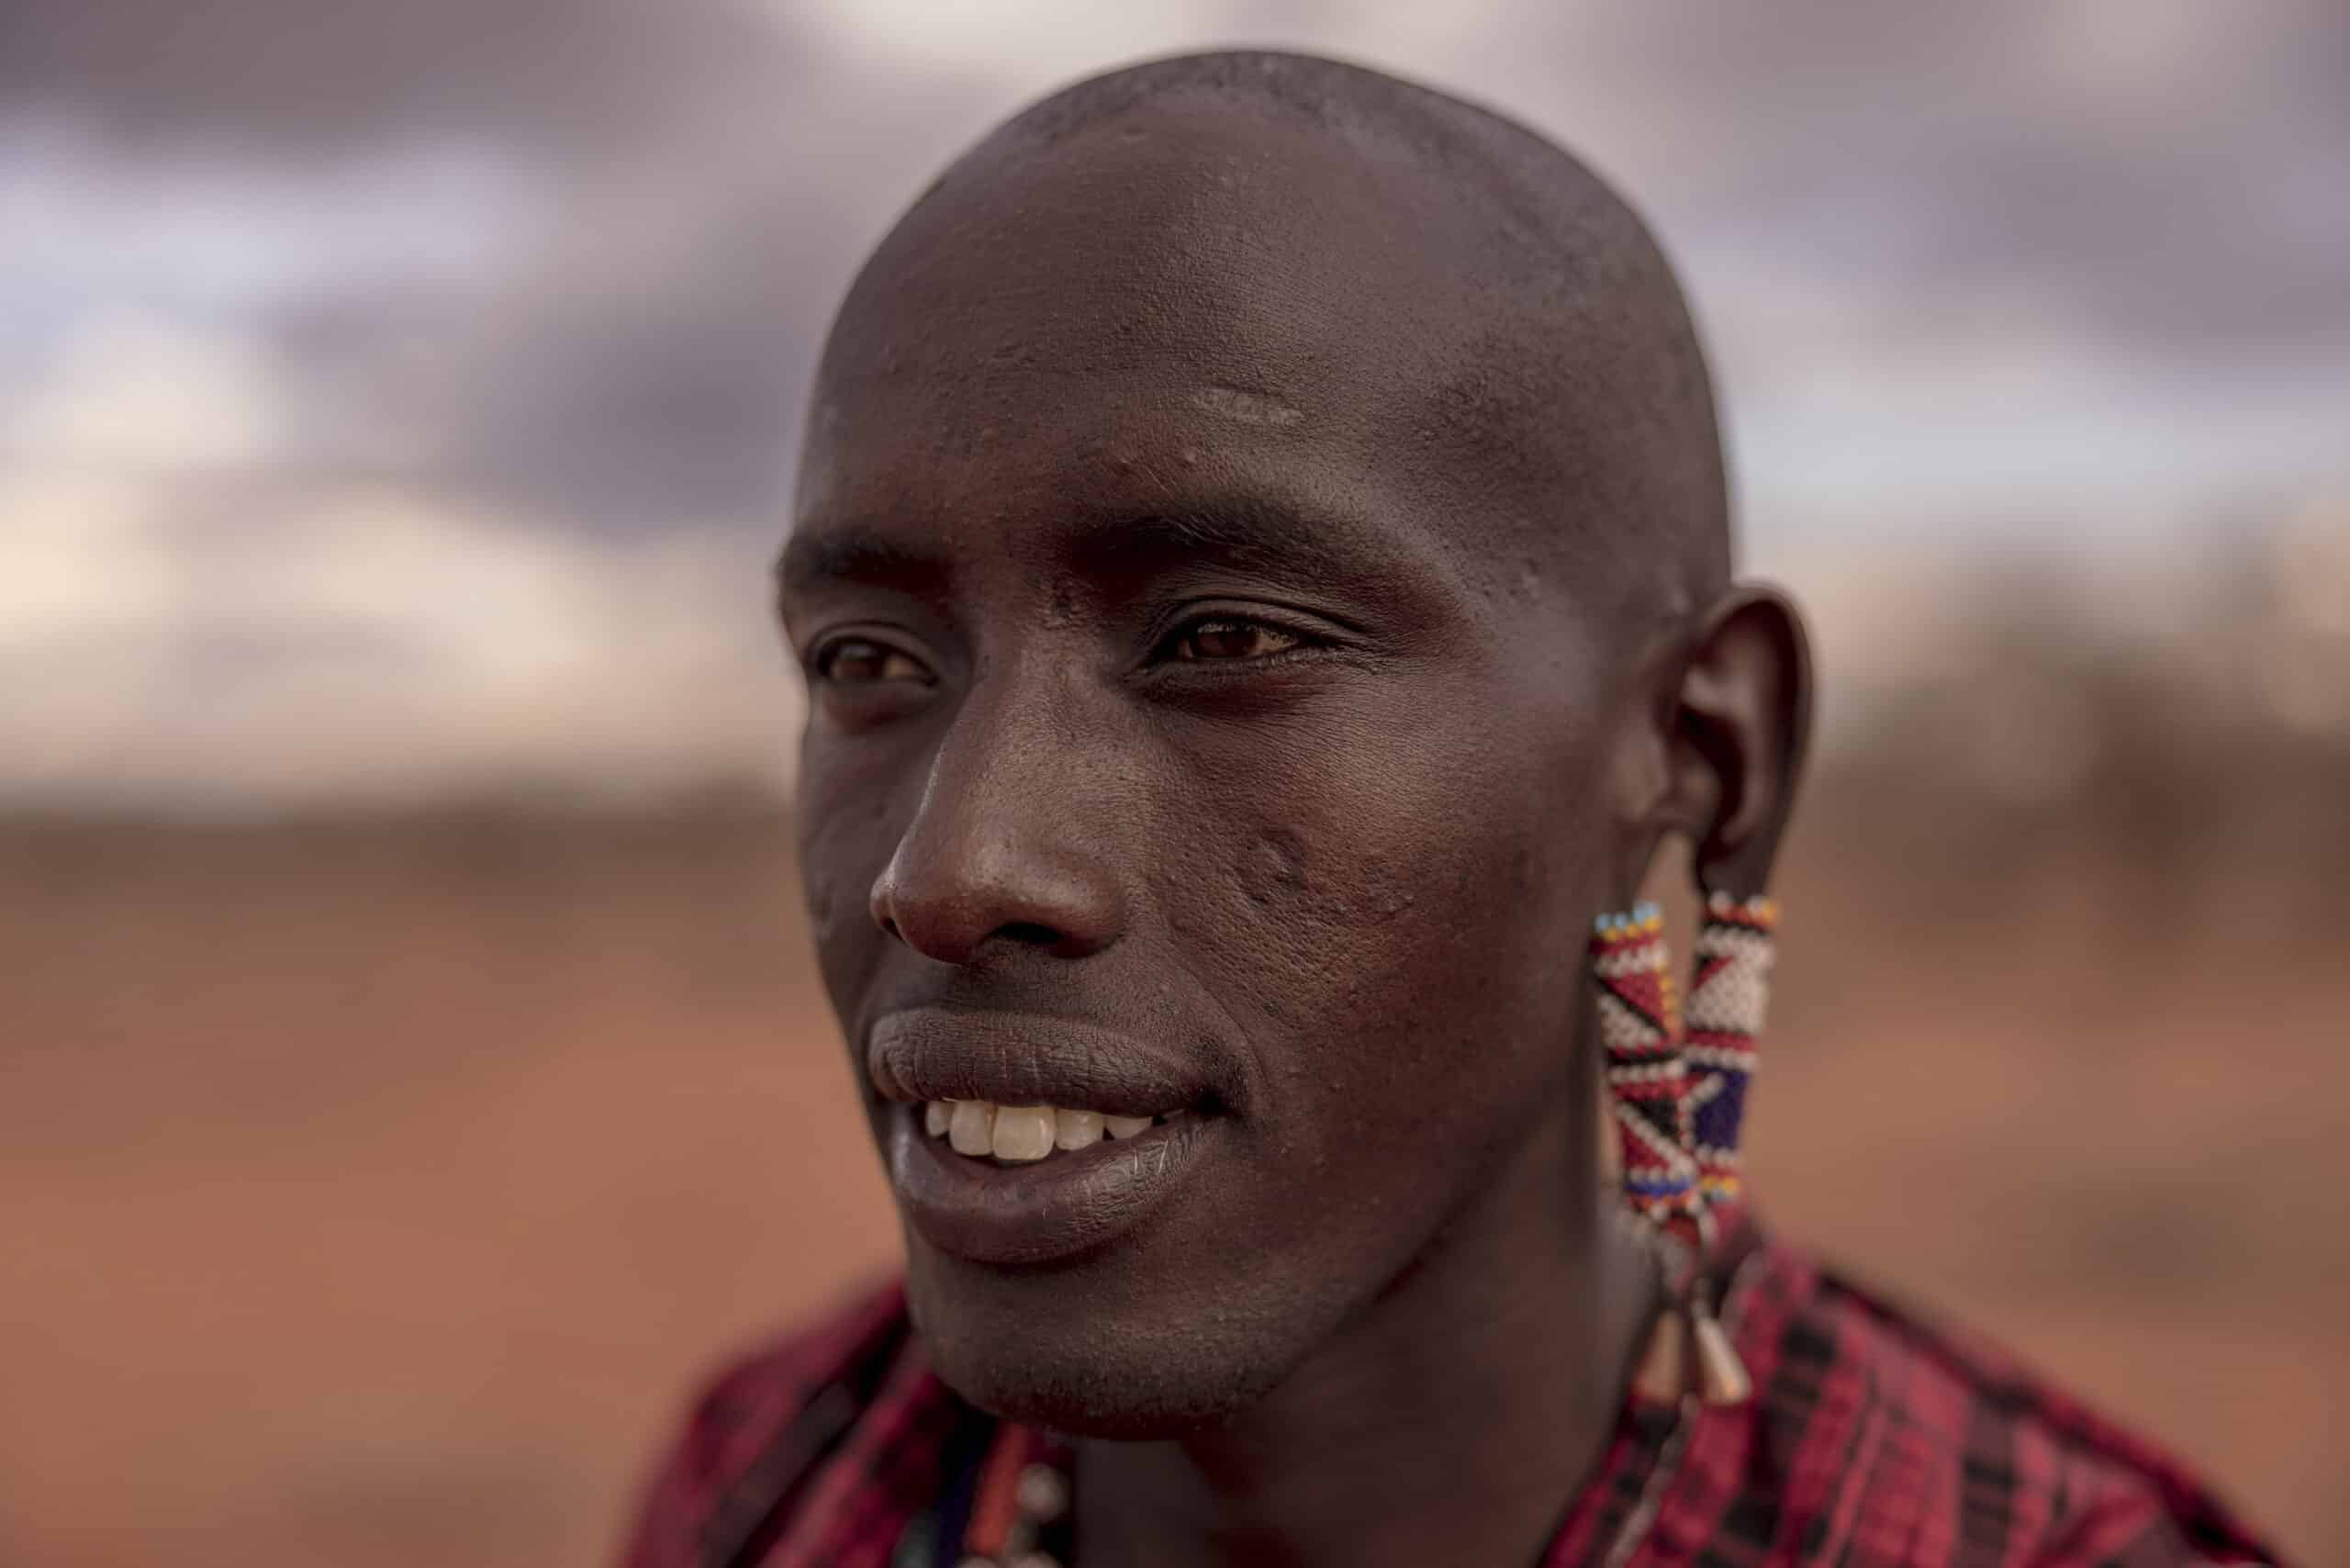 Nahaufnahme eines Massai-Mannes mit traditionellem Schmuck, darunter Perlenohrringe und eine rote Shuka, vor dem unscharfen Hintergrund einer halbtrockenen Landschaft. © Fotografie Tomas Rodriguez